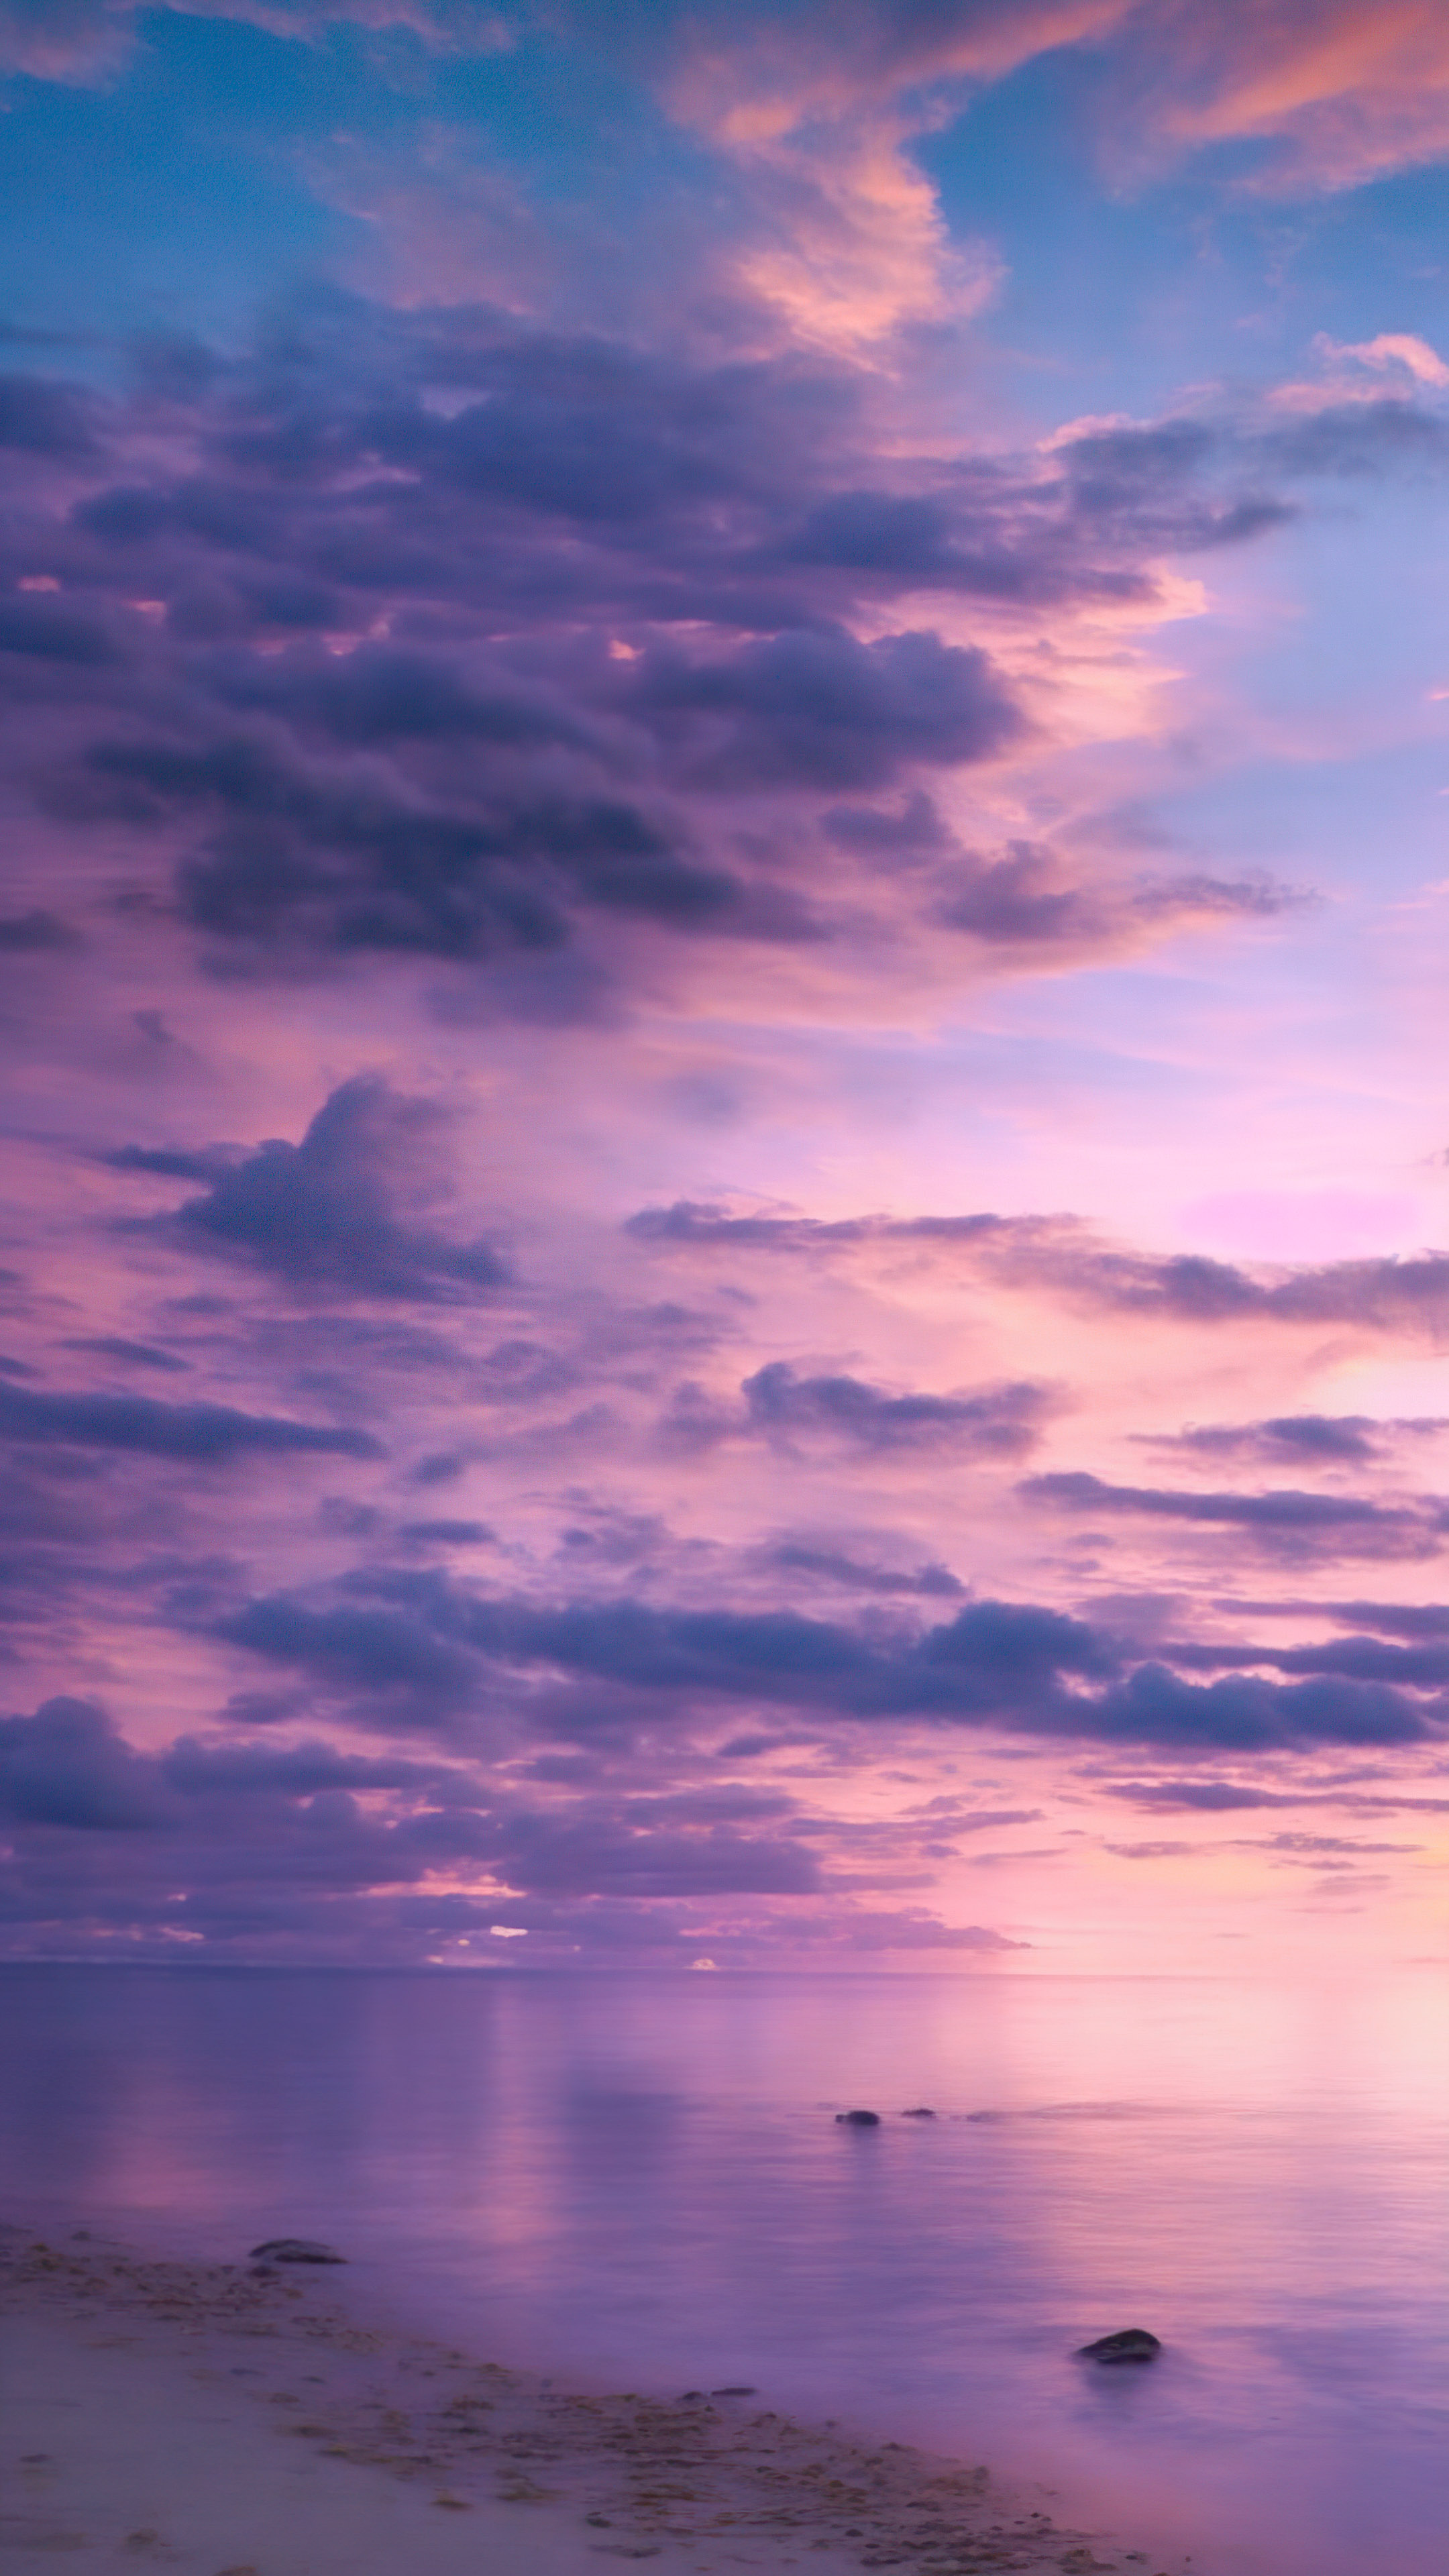 Admirez l'élégance d'une plage tranquille au crépuscule, avec le ciel peint en nuances de violet et de rose, avec notre fond d'écran de jolis nuages violets.